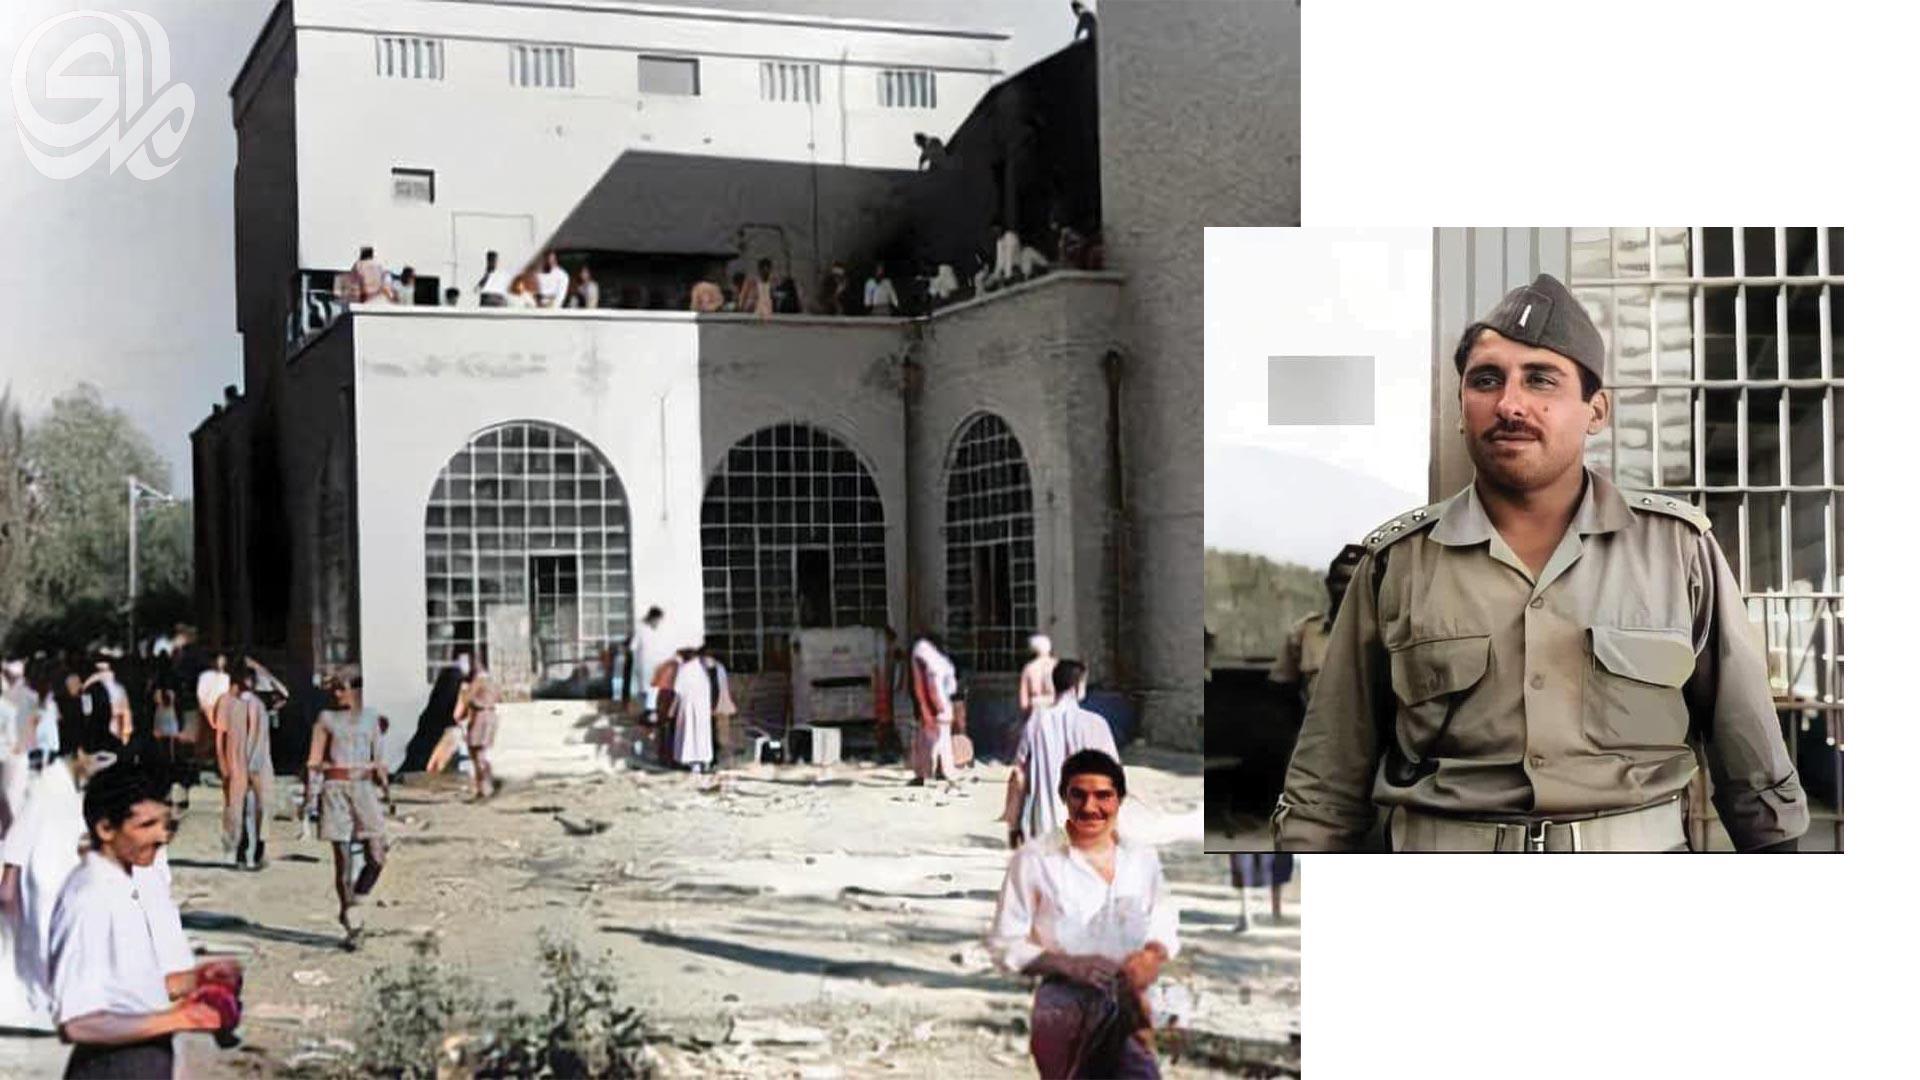 من أحداث يوم الثورة..مقتل العائلة المالكة في العراق يوم 14 تموز 1958م